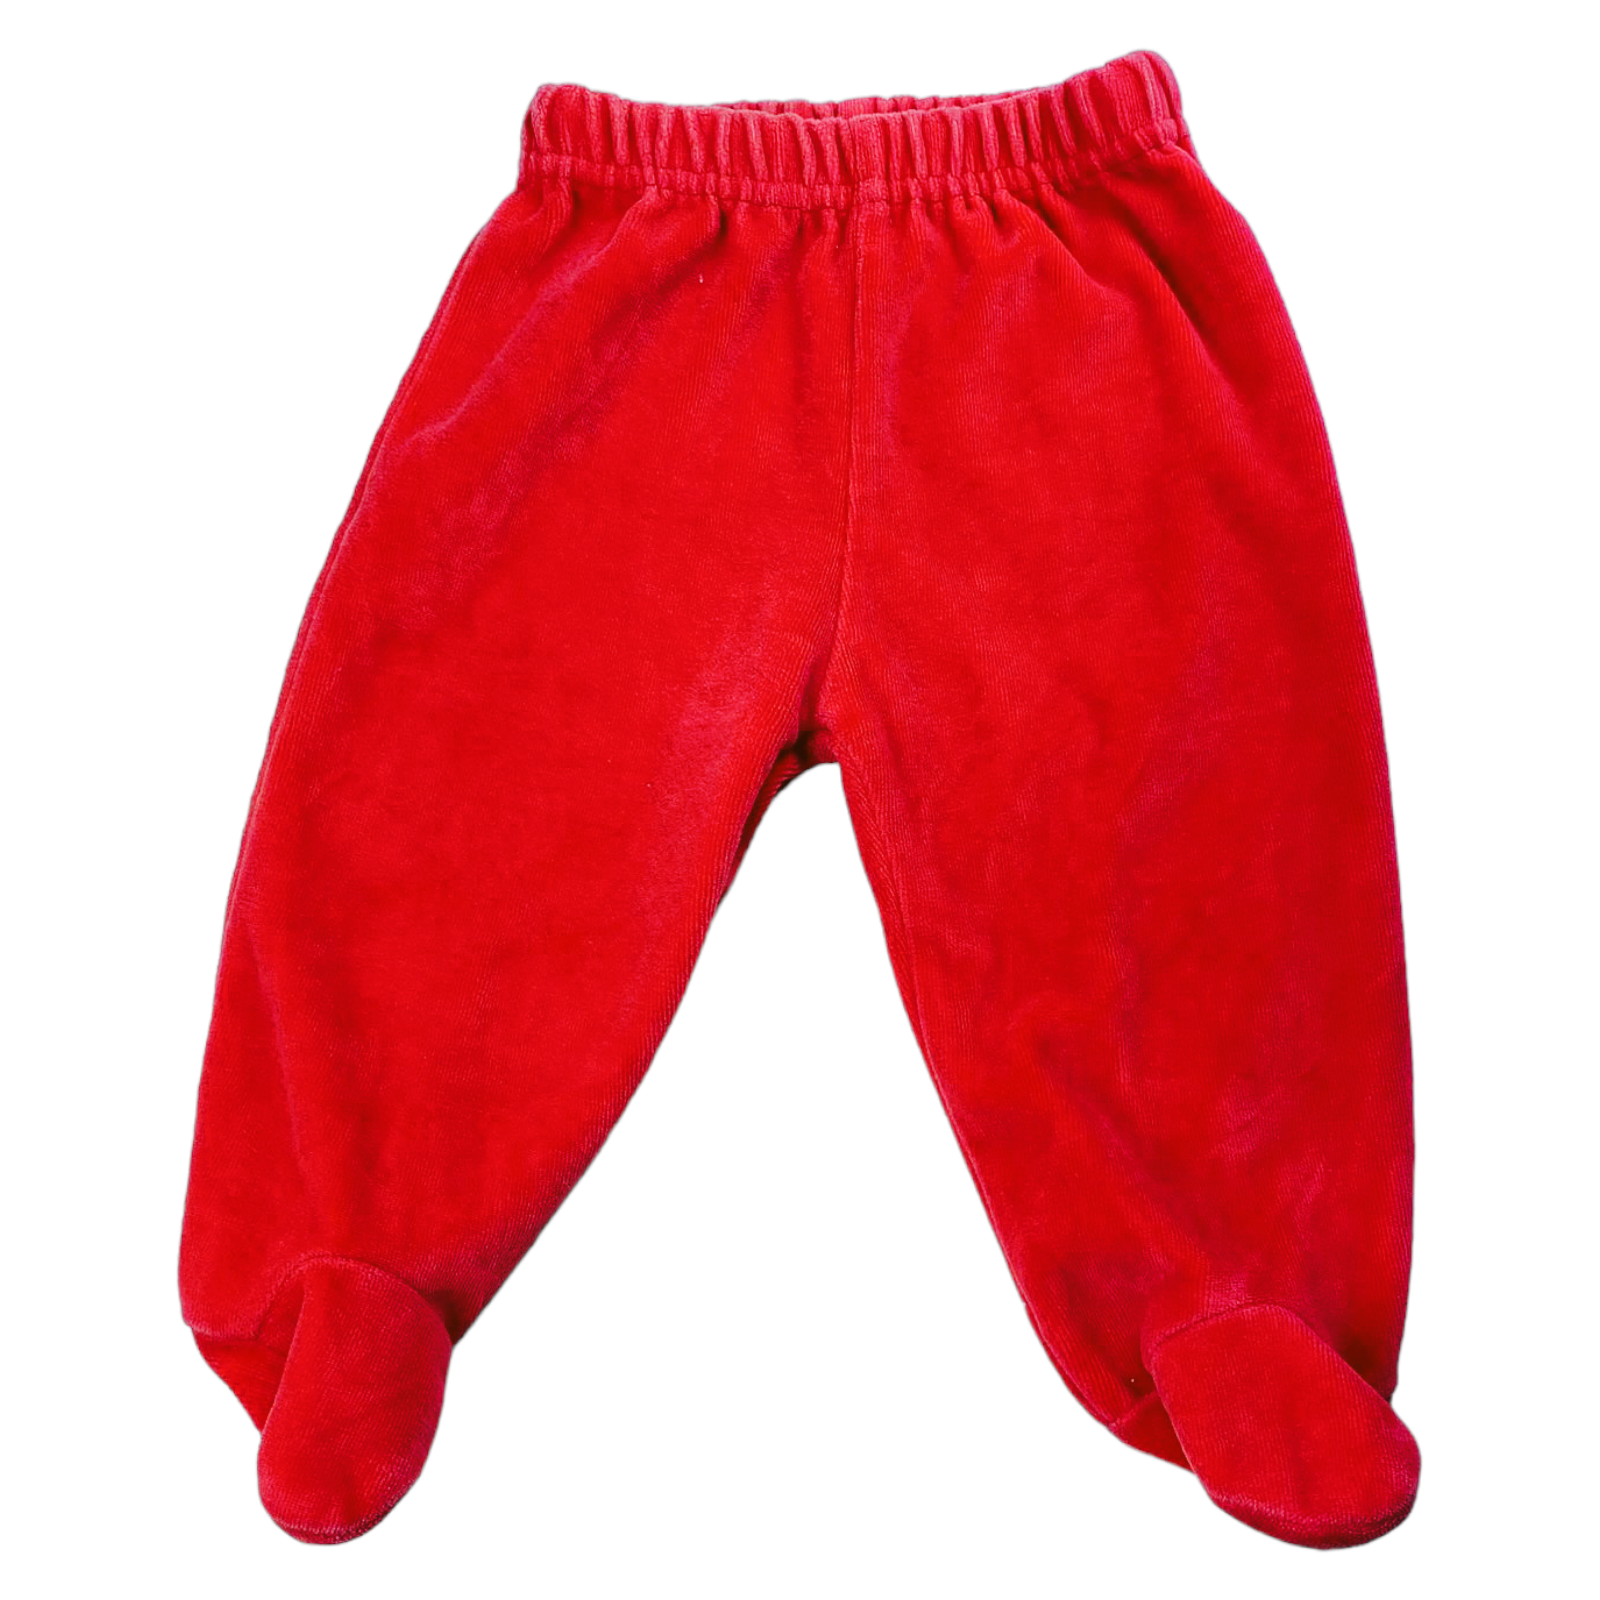 Panty de Plush roja